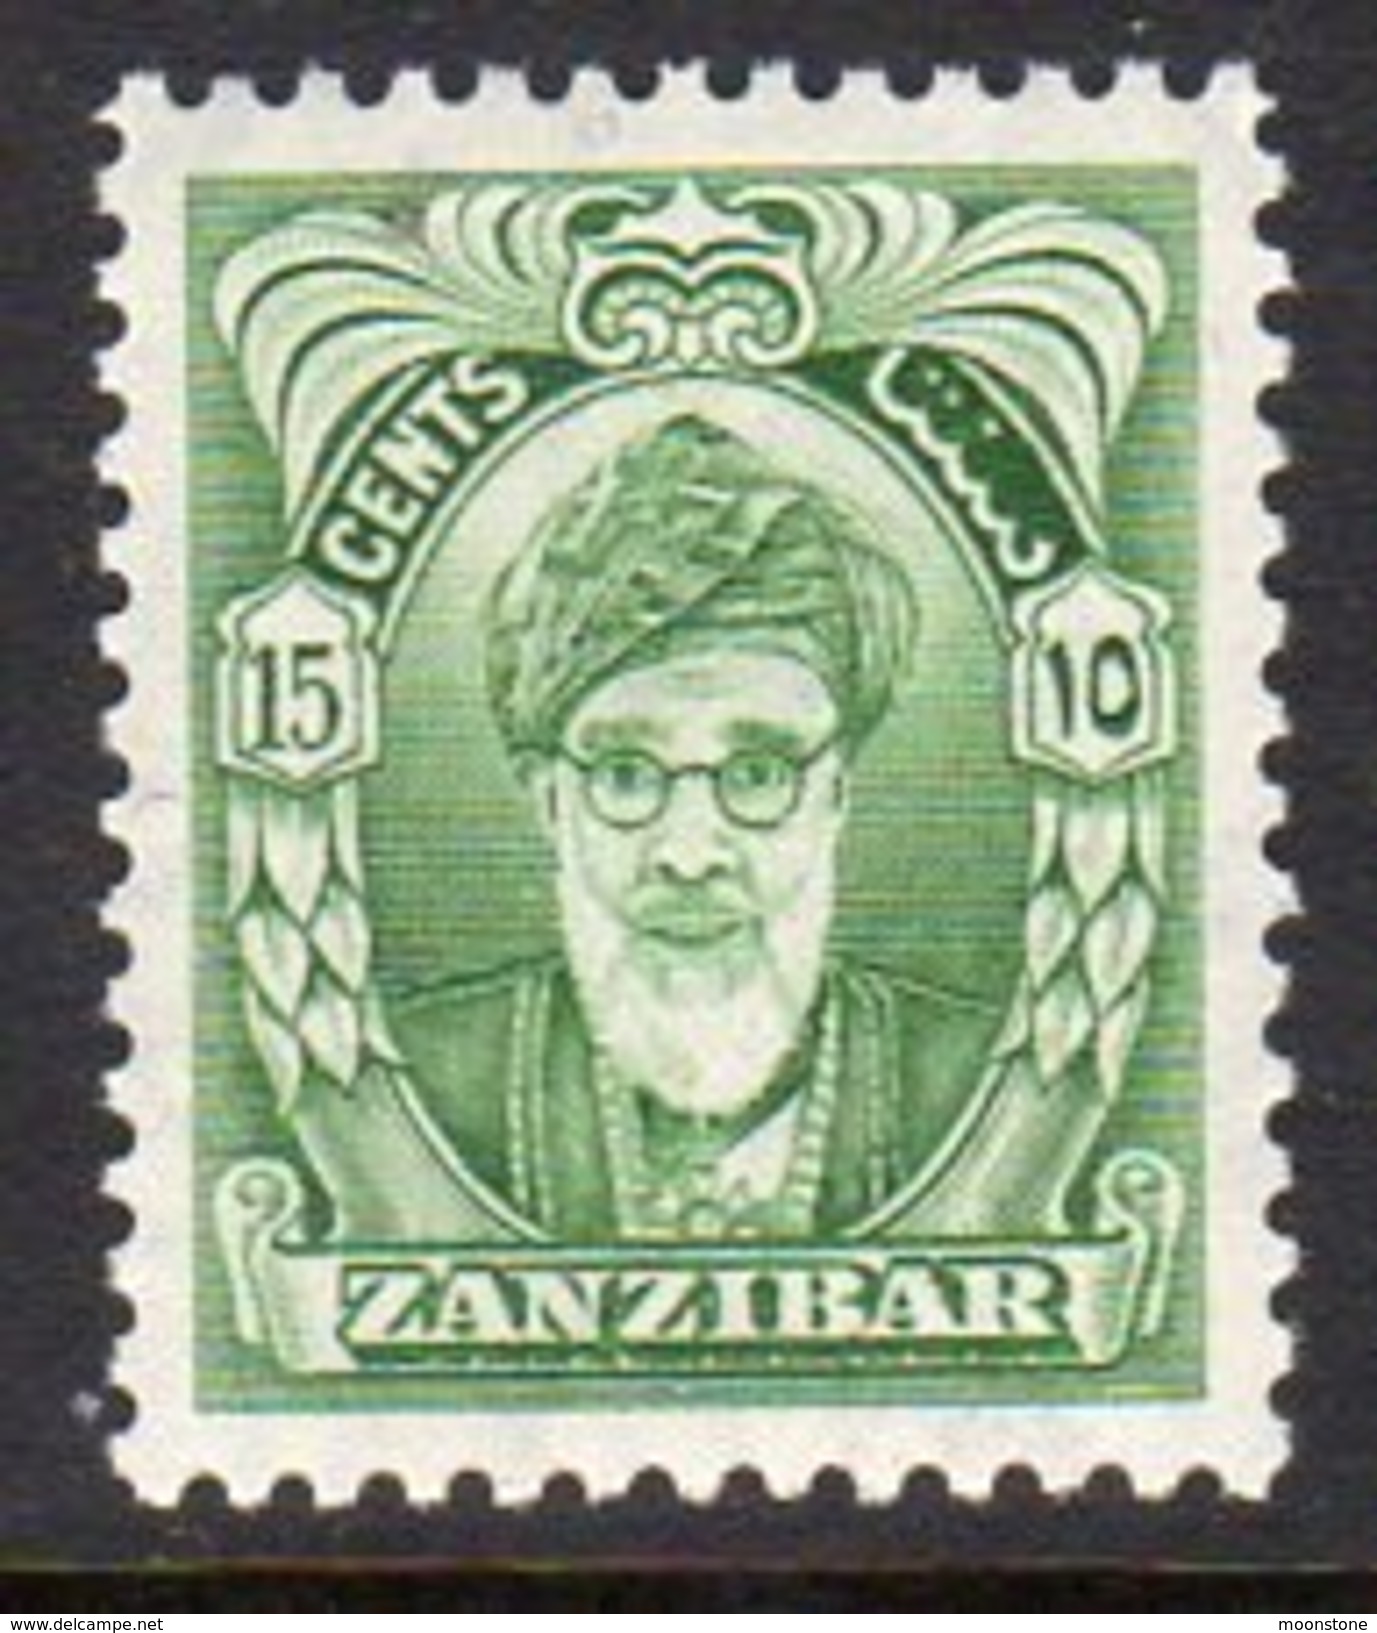 Zanzibar 1952-5 15c Sultan Kalif Bin Harub Definitive, MNH, SG 341 (BA) - Zanzibar (...-1963)